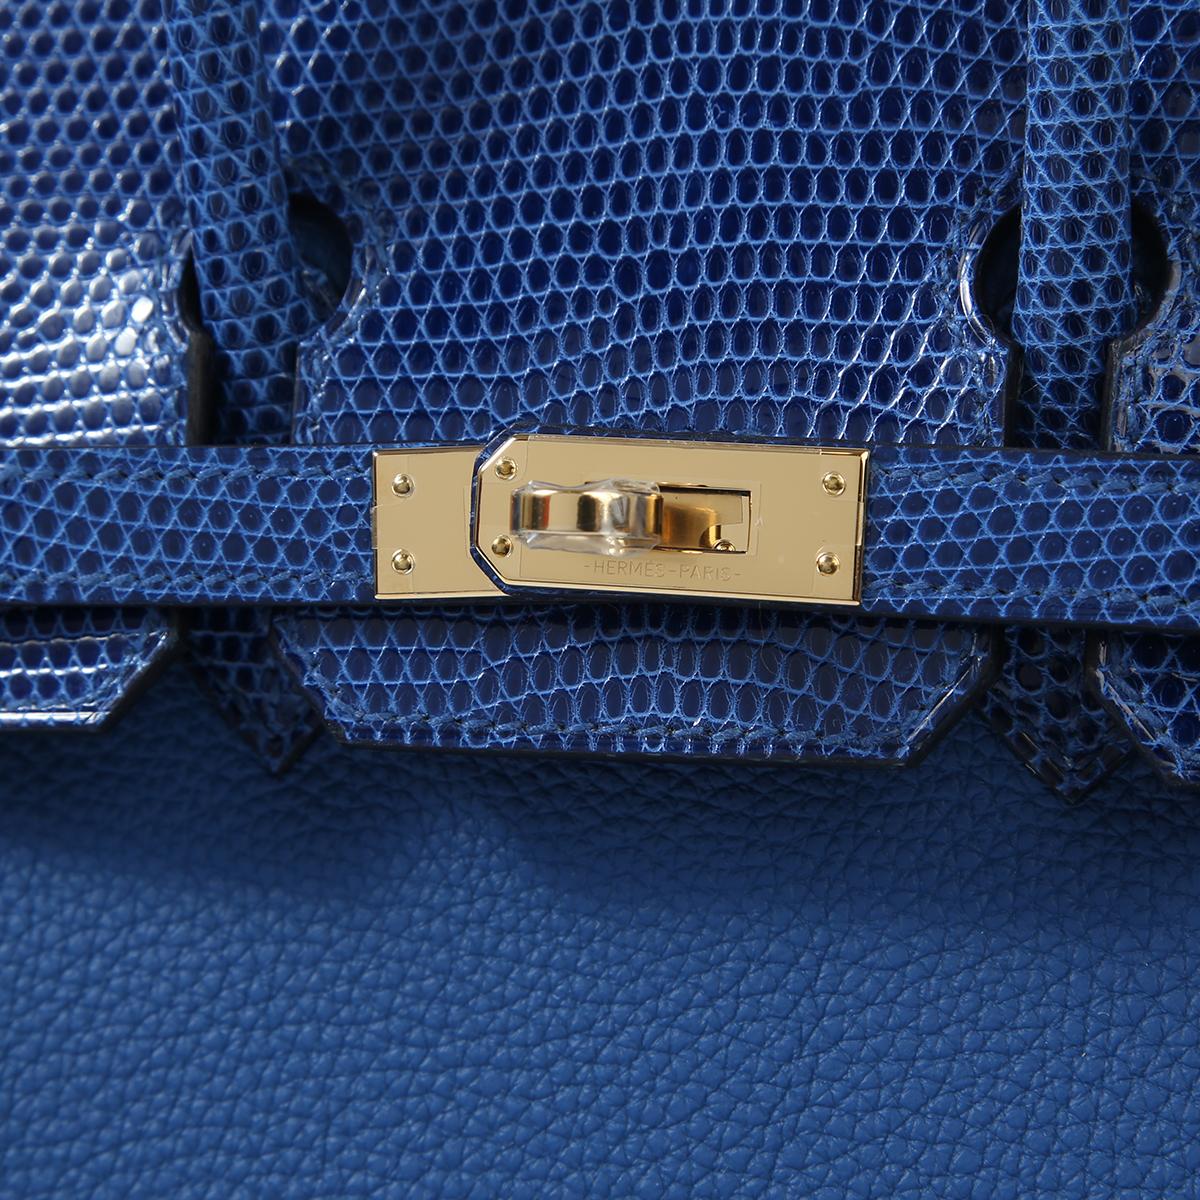 Neuer Condit
Von 2022 Collection'S
Bleu Royal 
Eidechse
Togo
Permabrass Hardware
Enthält  Vorhängeschloss, Clochette, Regenschutz, Staubbeutel, Box, Schlüssel
Maße: 9,85